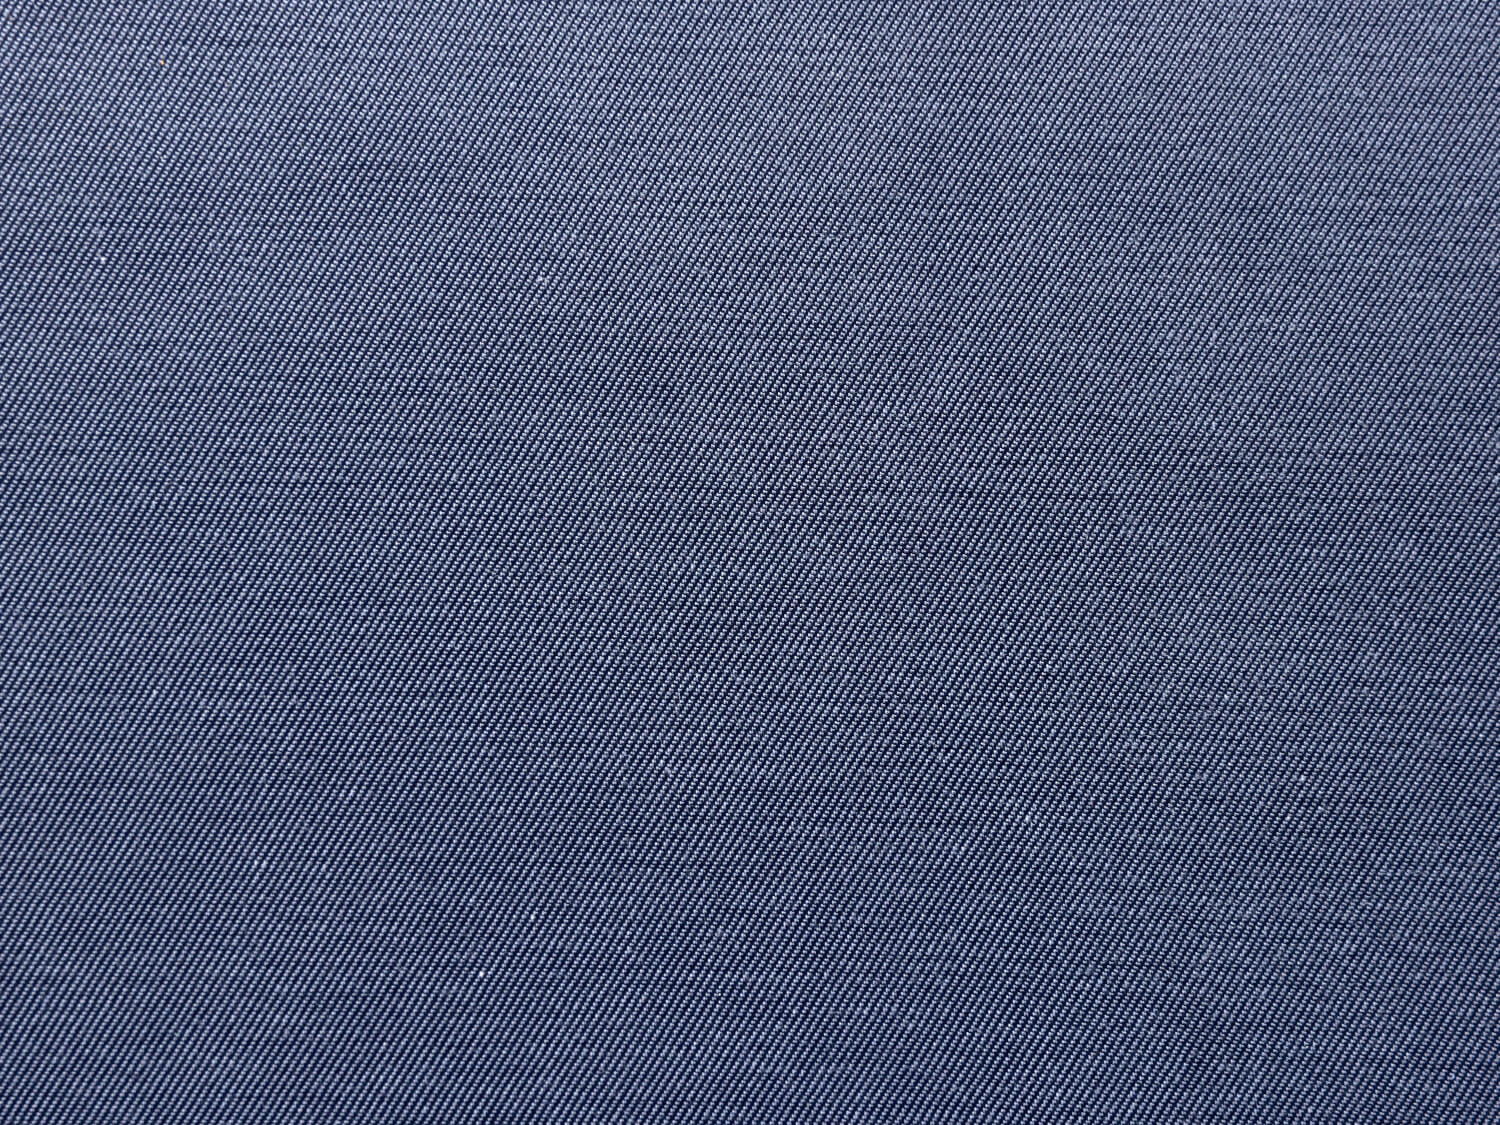 Il tessuto grigio antracite della tovaglia e dei cuscini della panca è composto per il 51% da poliestere e per il 49% da cotone.